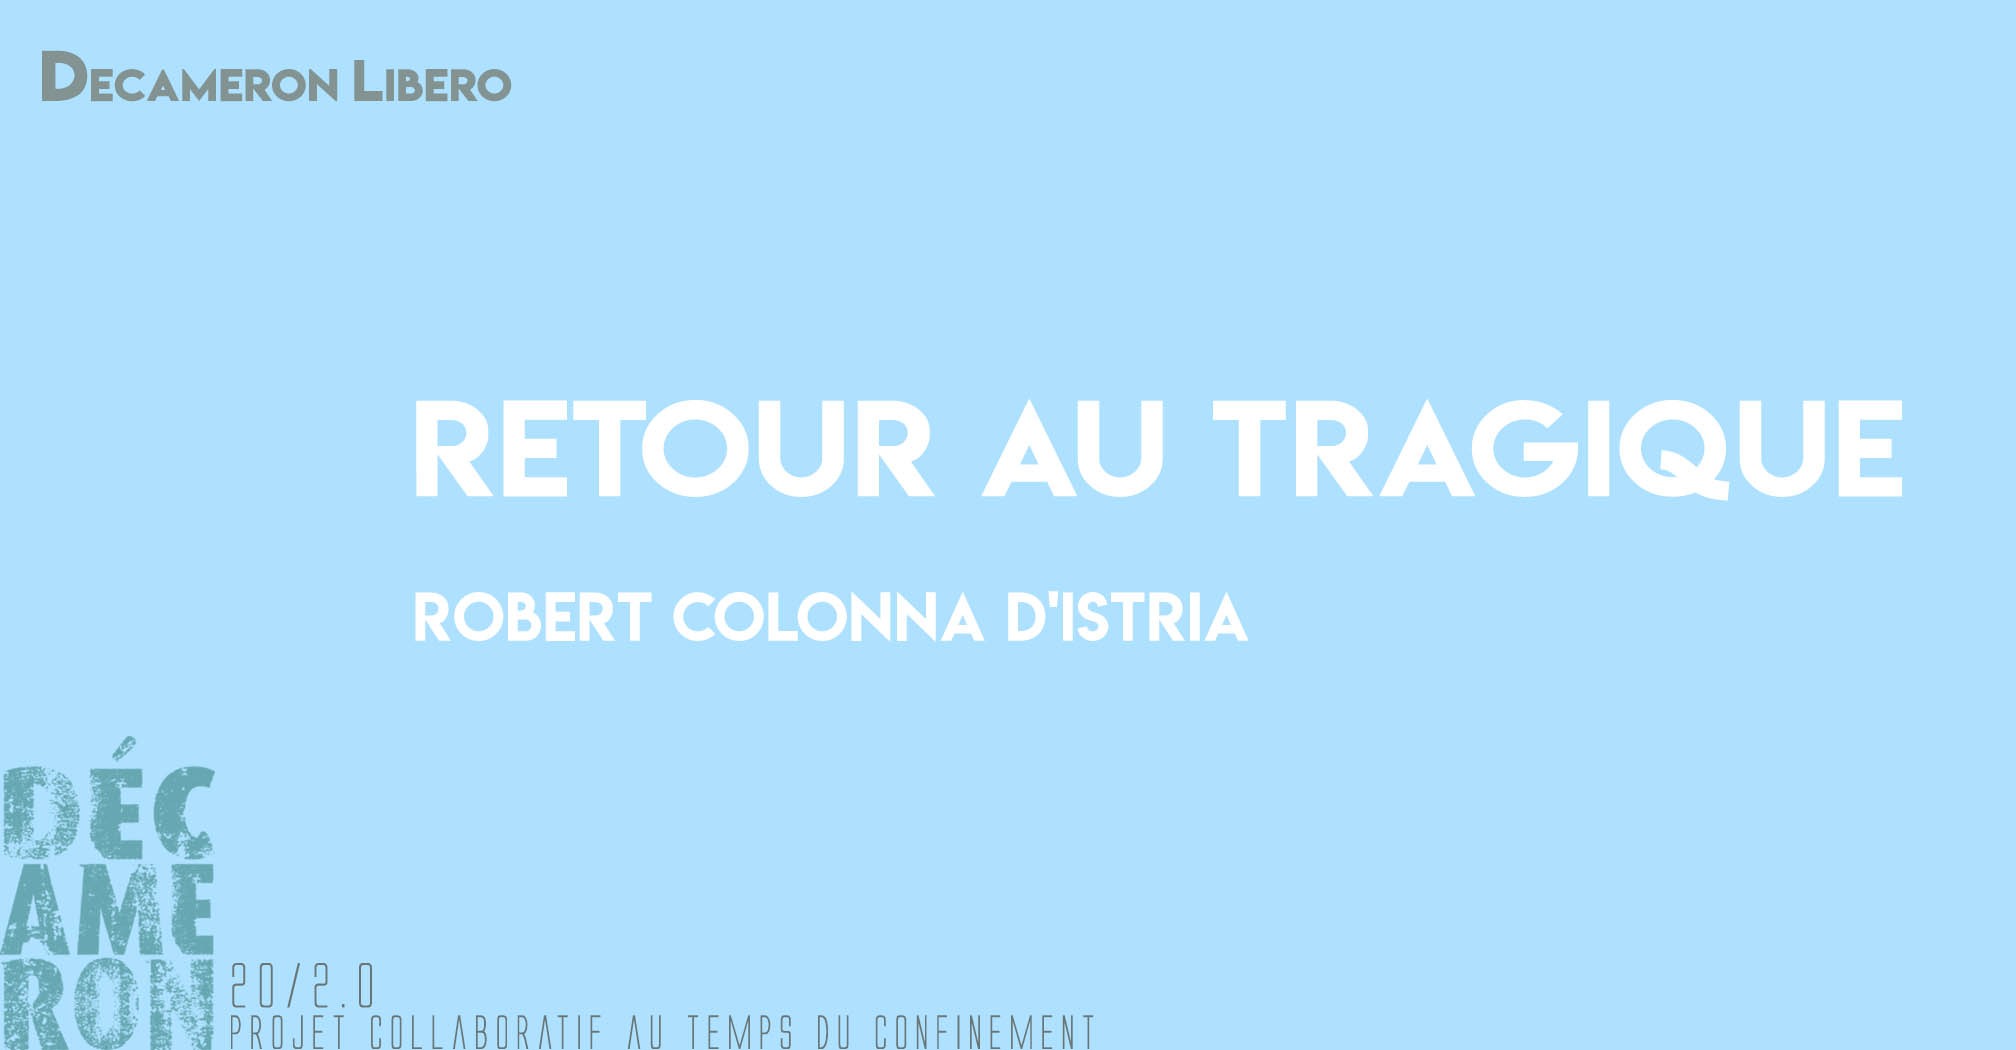 Retour au tragique - Robert Colonna d'Istria